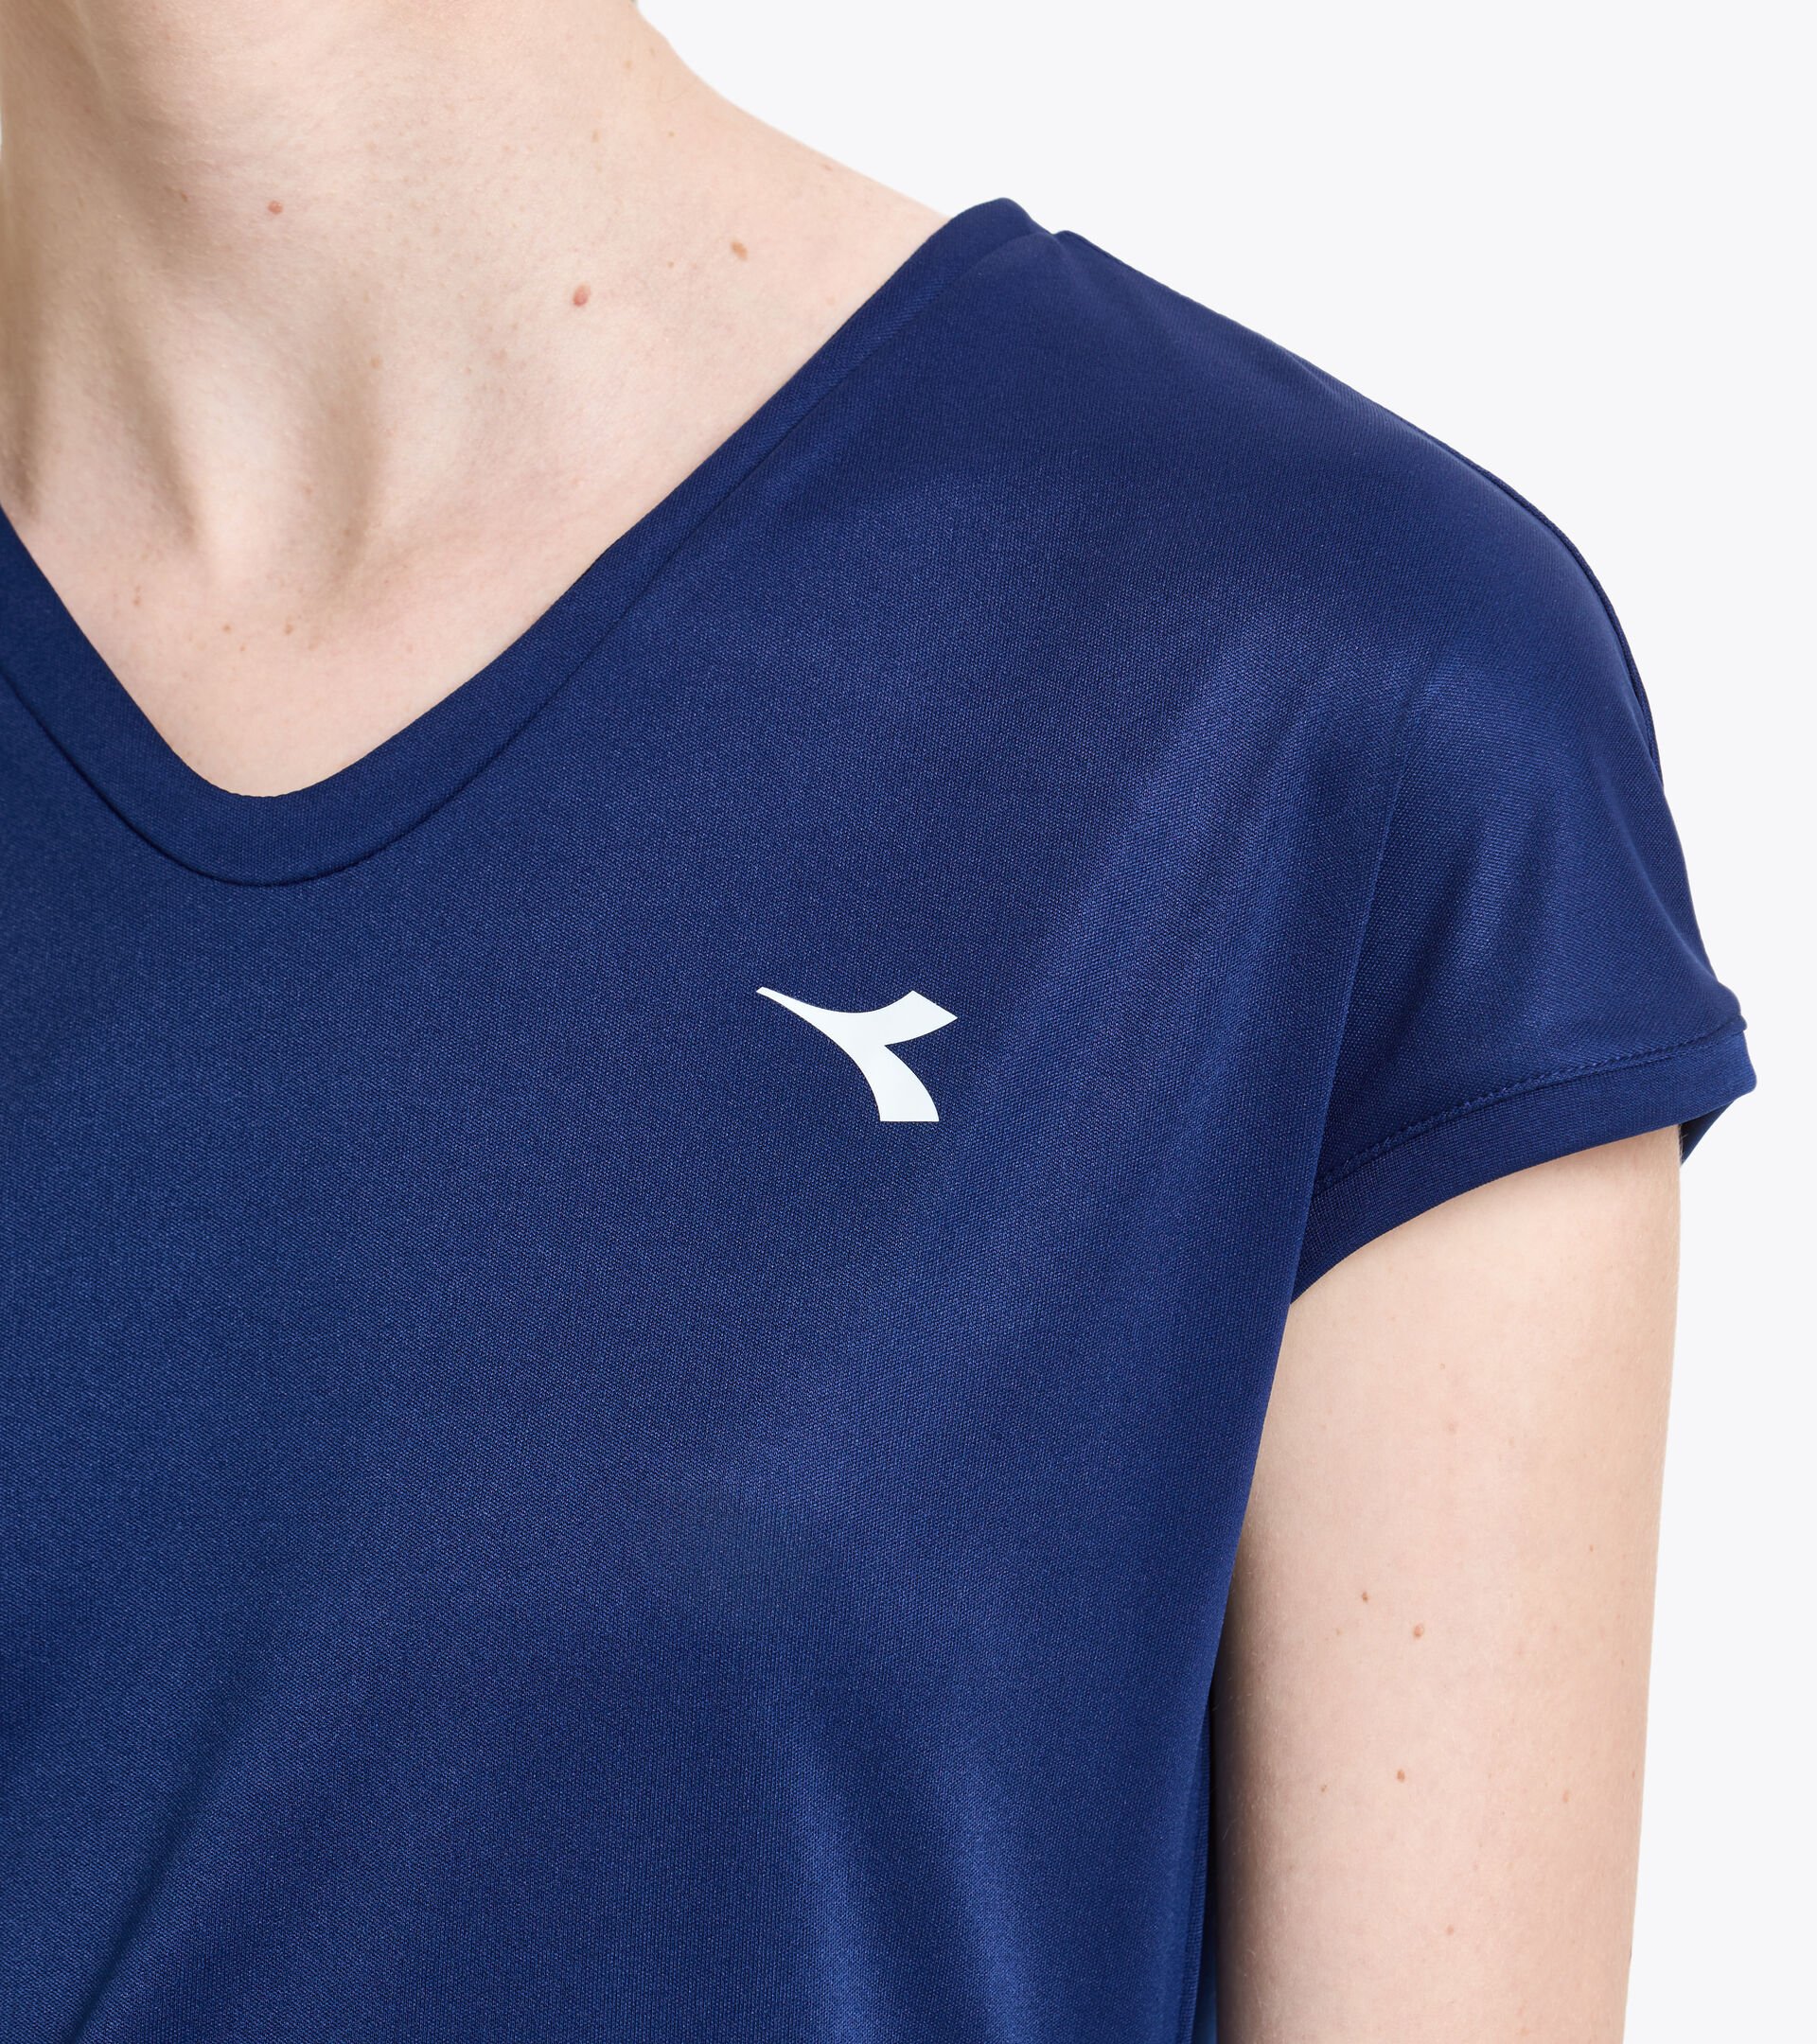 T-shirt de tennis - Femme L. T-SHIRT TEAM BLEU DOMAINE - Diadora